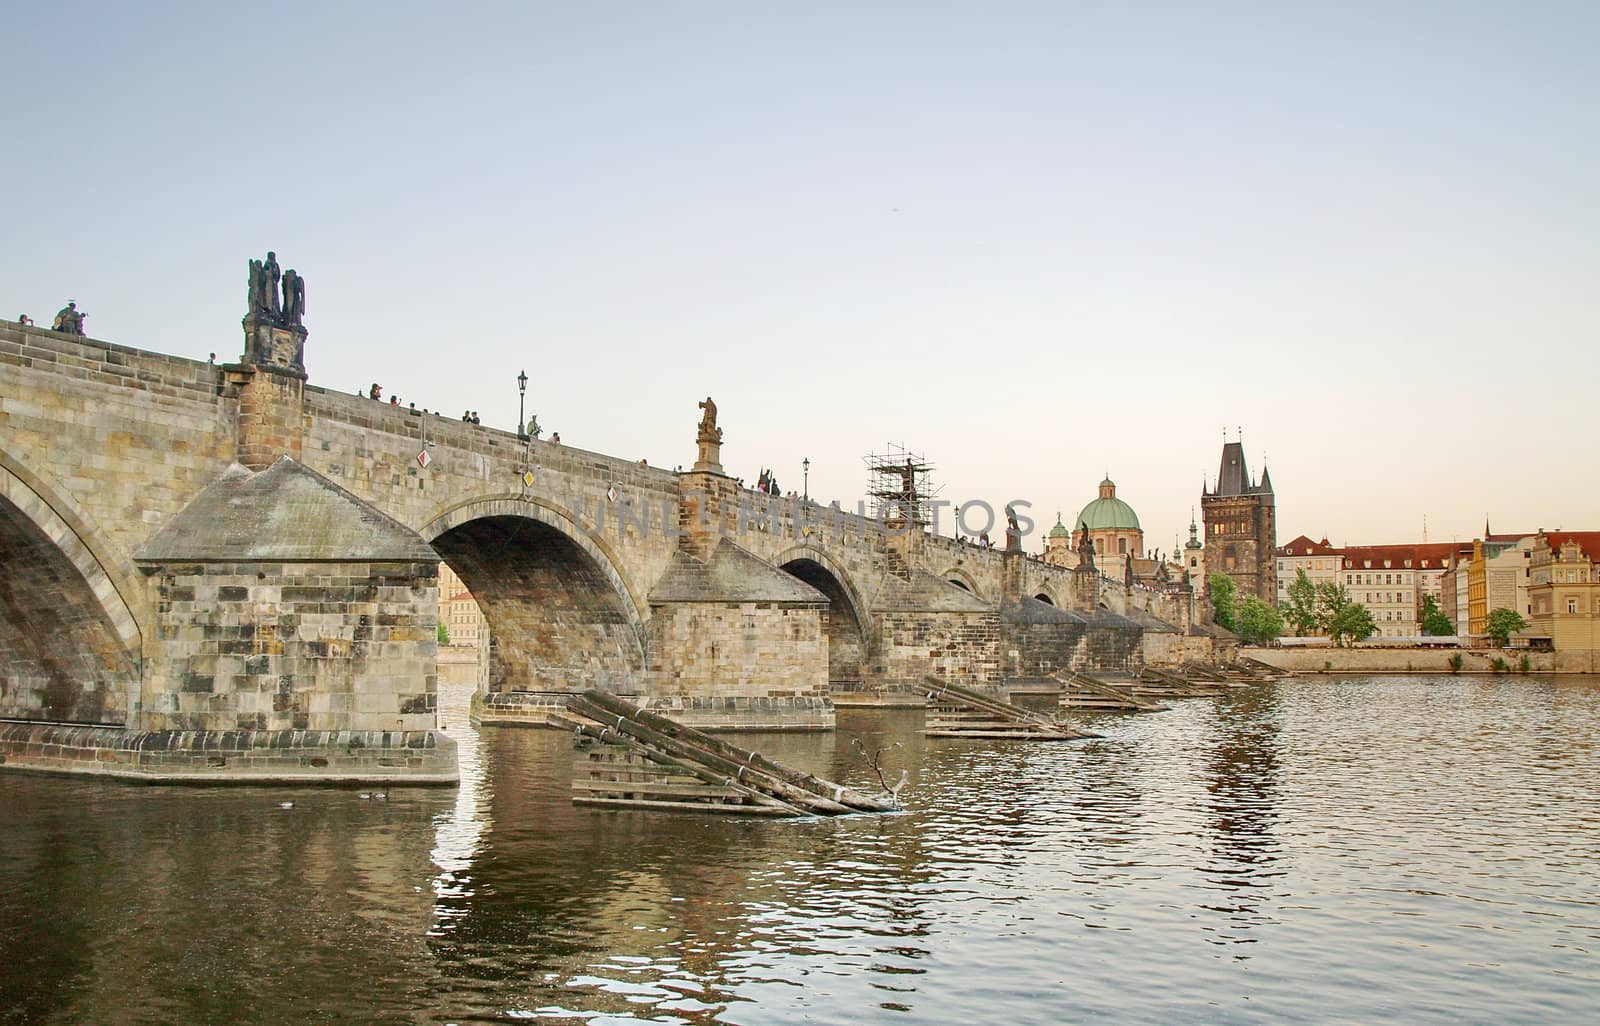 Charles Bridge of Prague by anderm